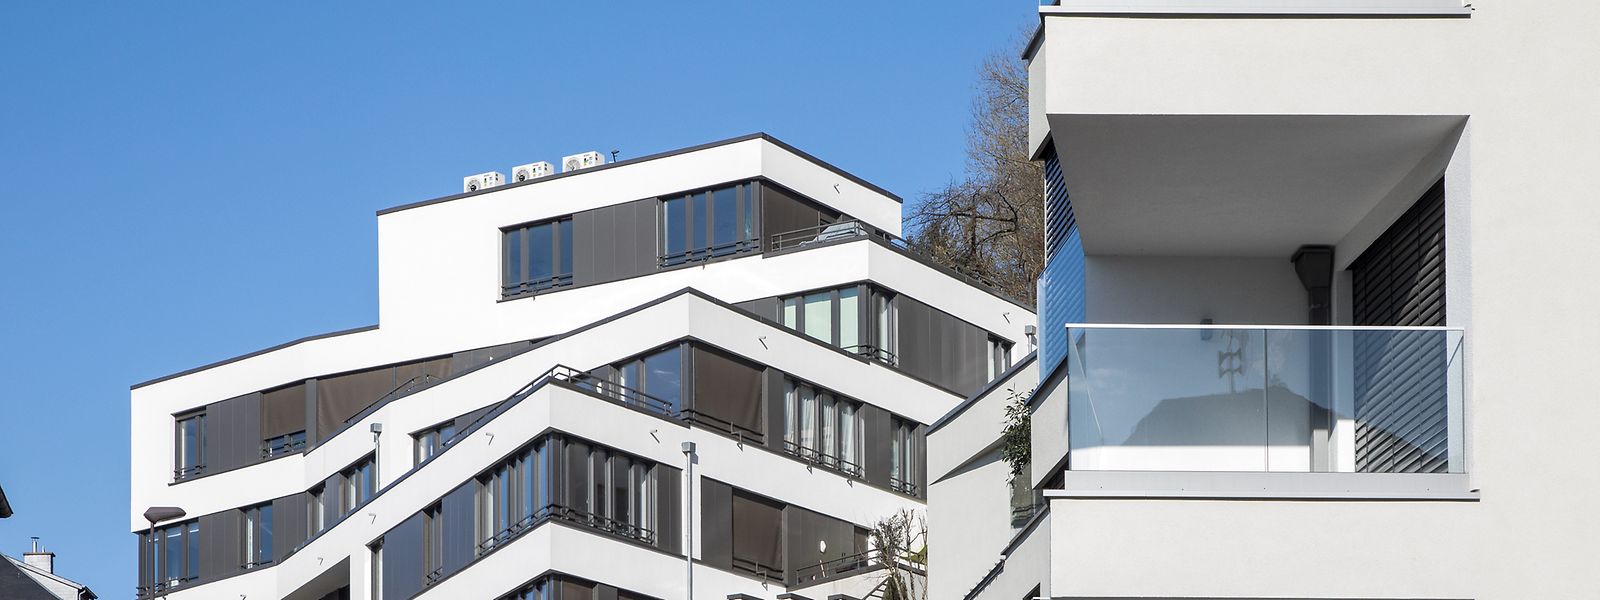 Die Preissteigerung auf dem Wohnungsmarkt verschärft die sozialen Ungleichheiten in Luxemburg.